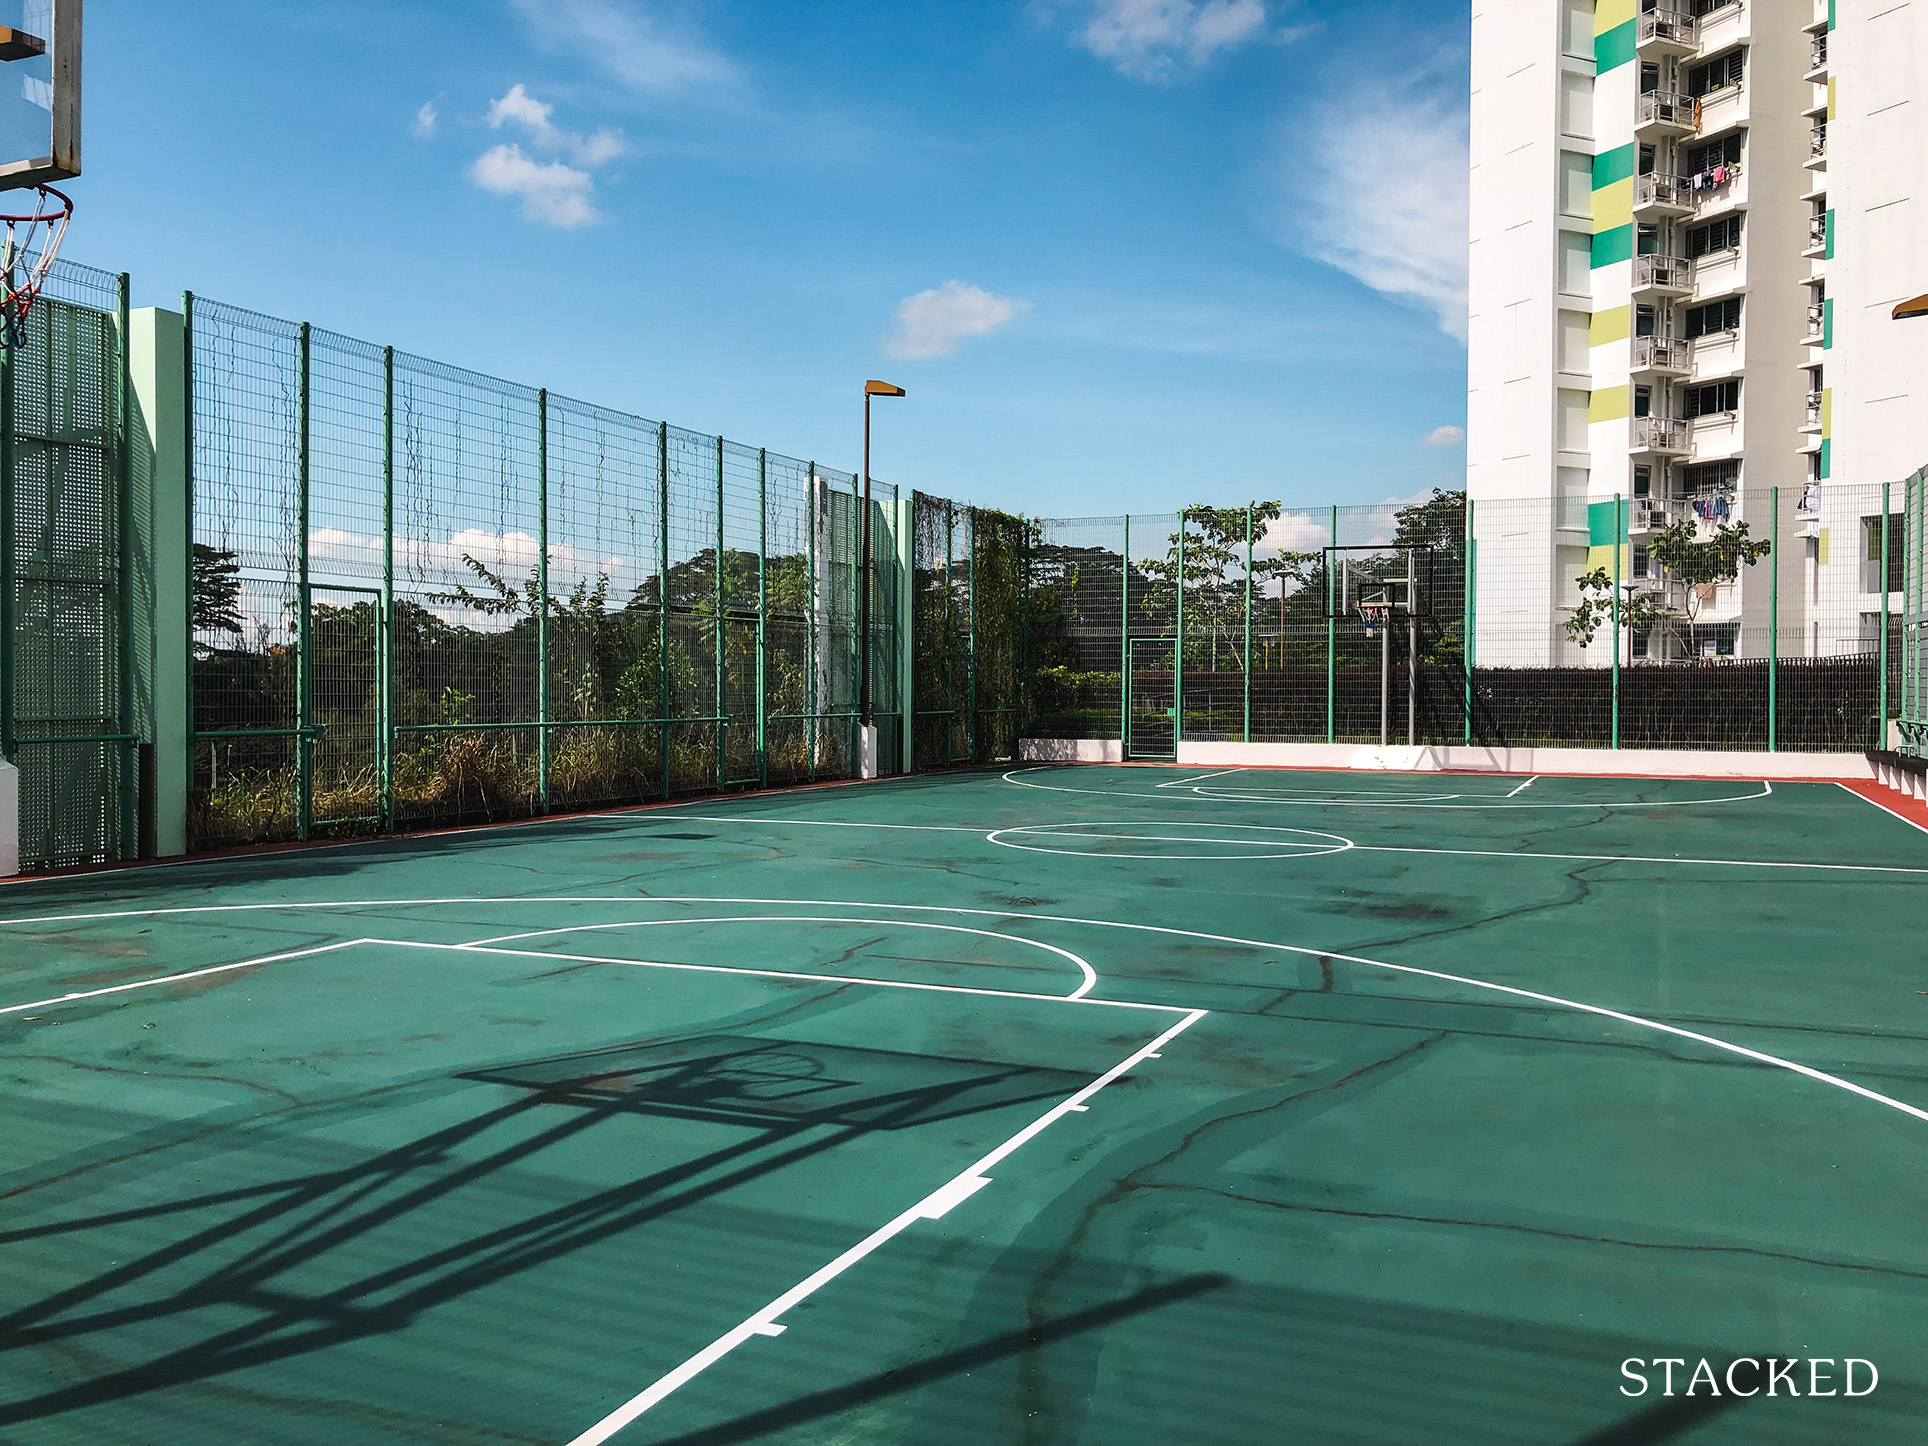 senja parc view rooftop garden basketball court